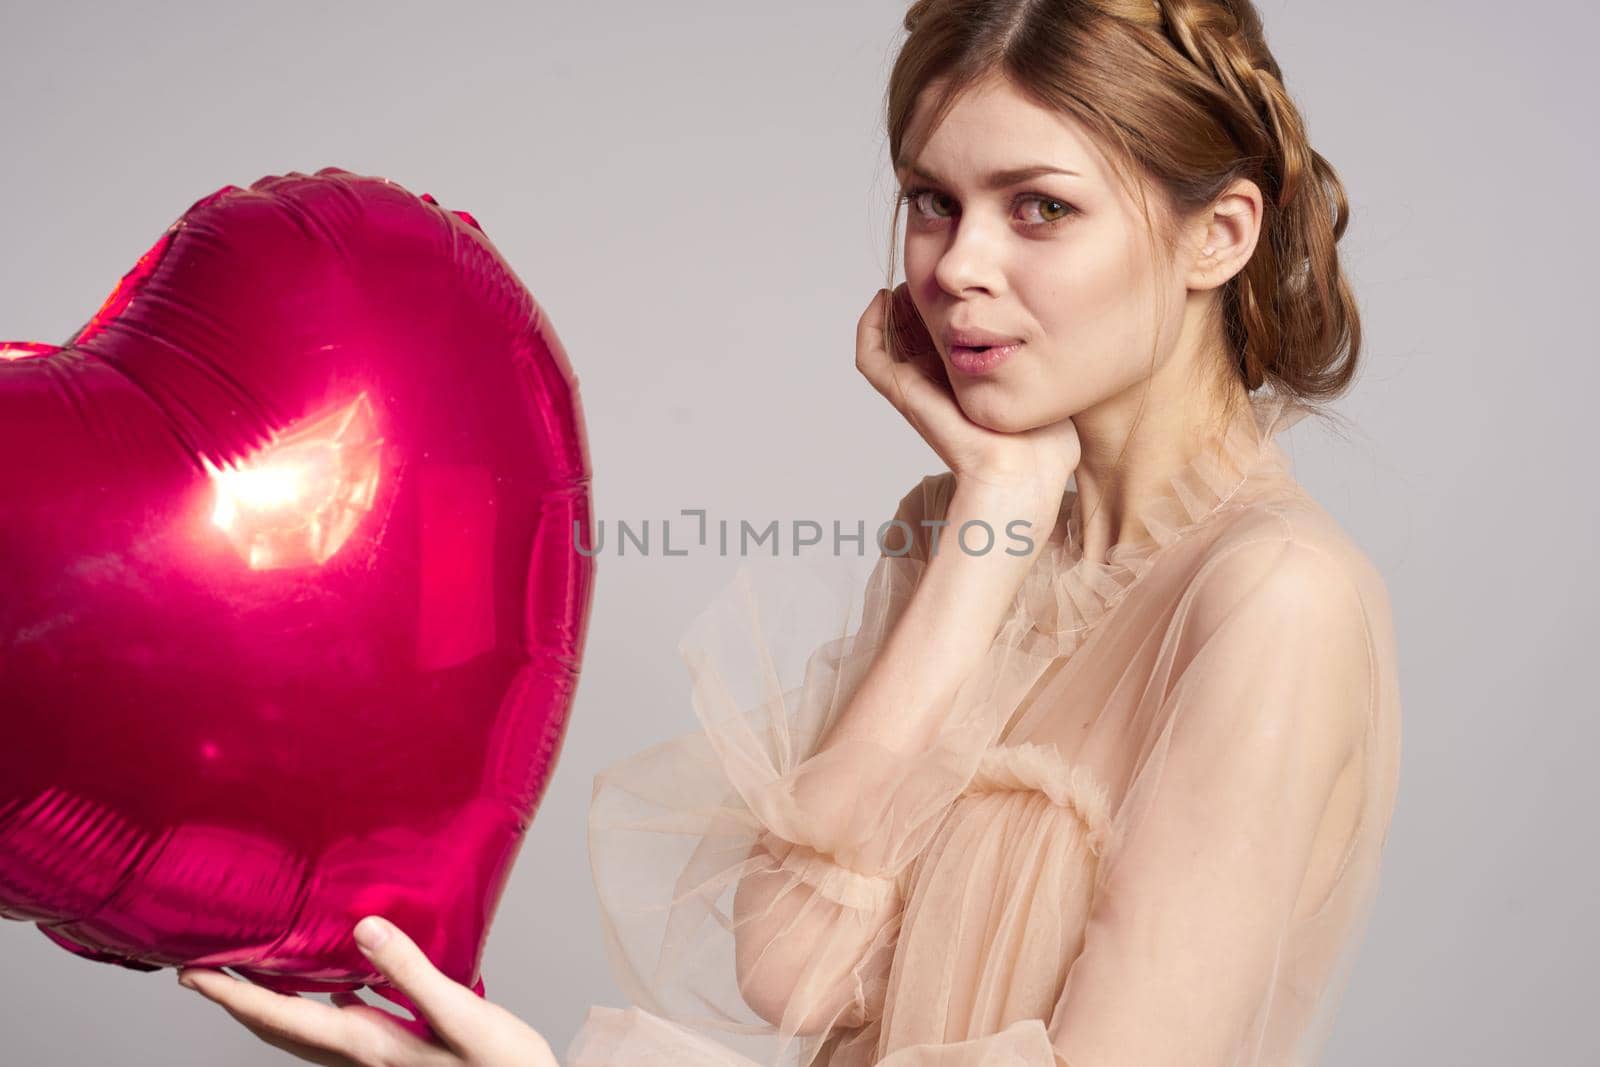 beautiful woman balloon heart gift fashion holiday by Vichizh